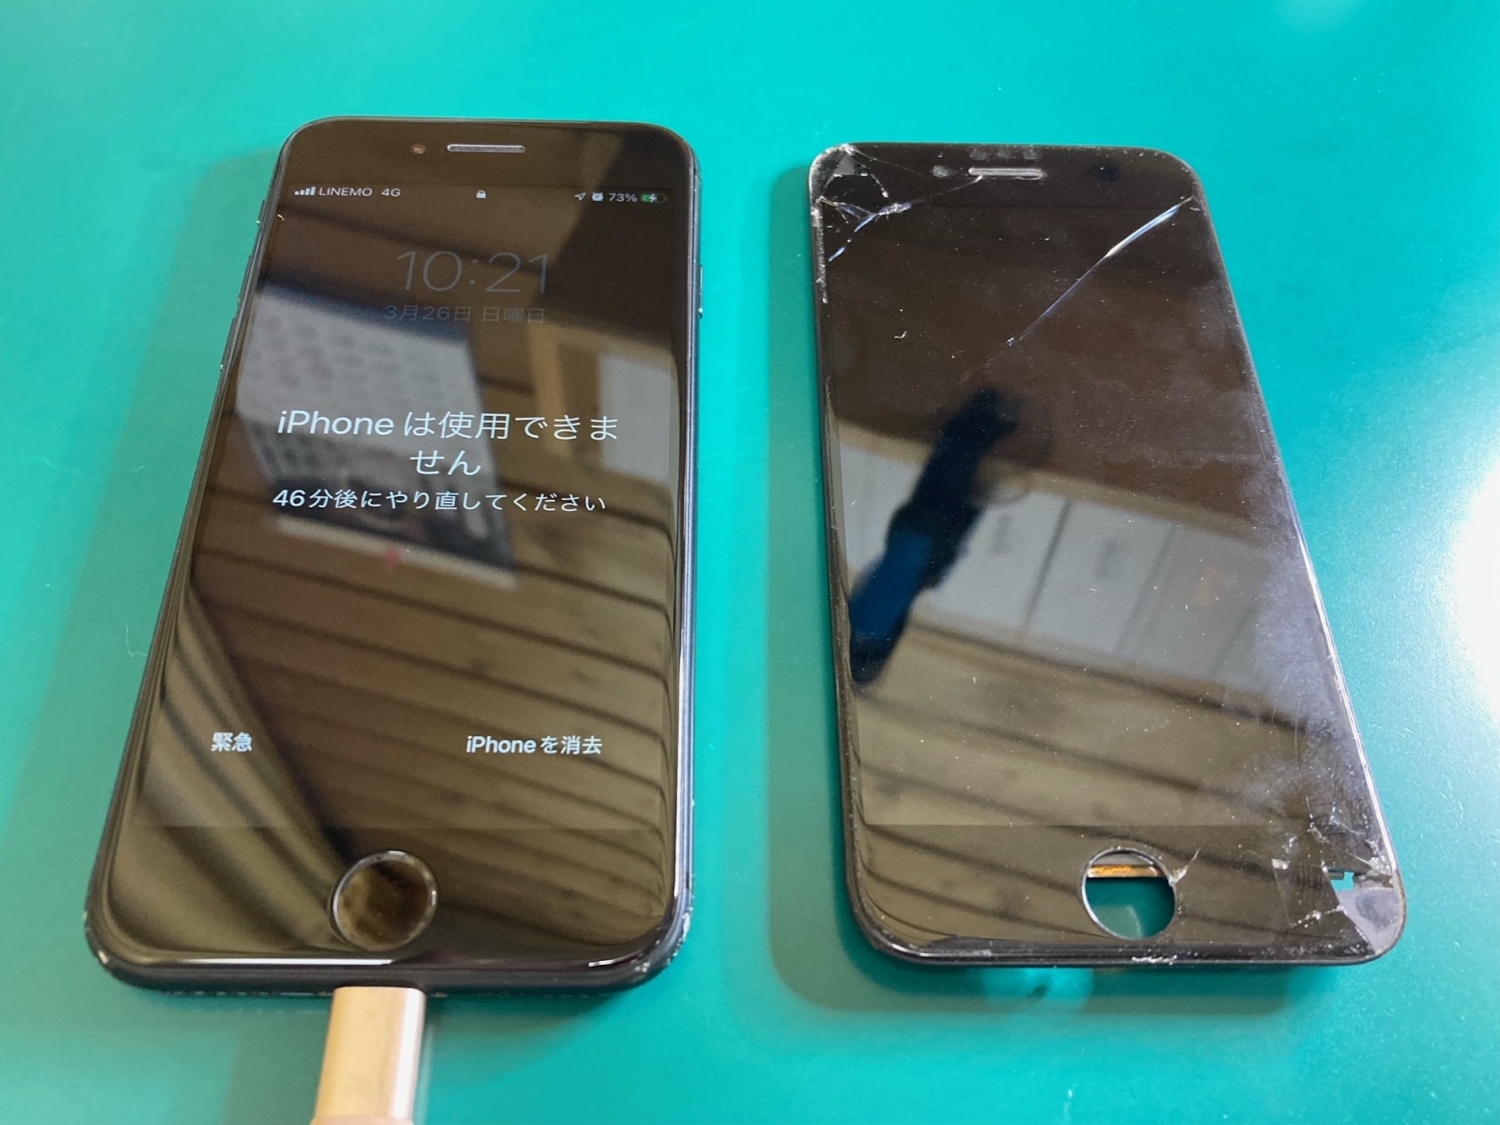 iPhone画面ひび割れと一部タッチパネルが反応しない症状の修理のご依頼をいただきました。